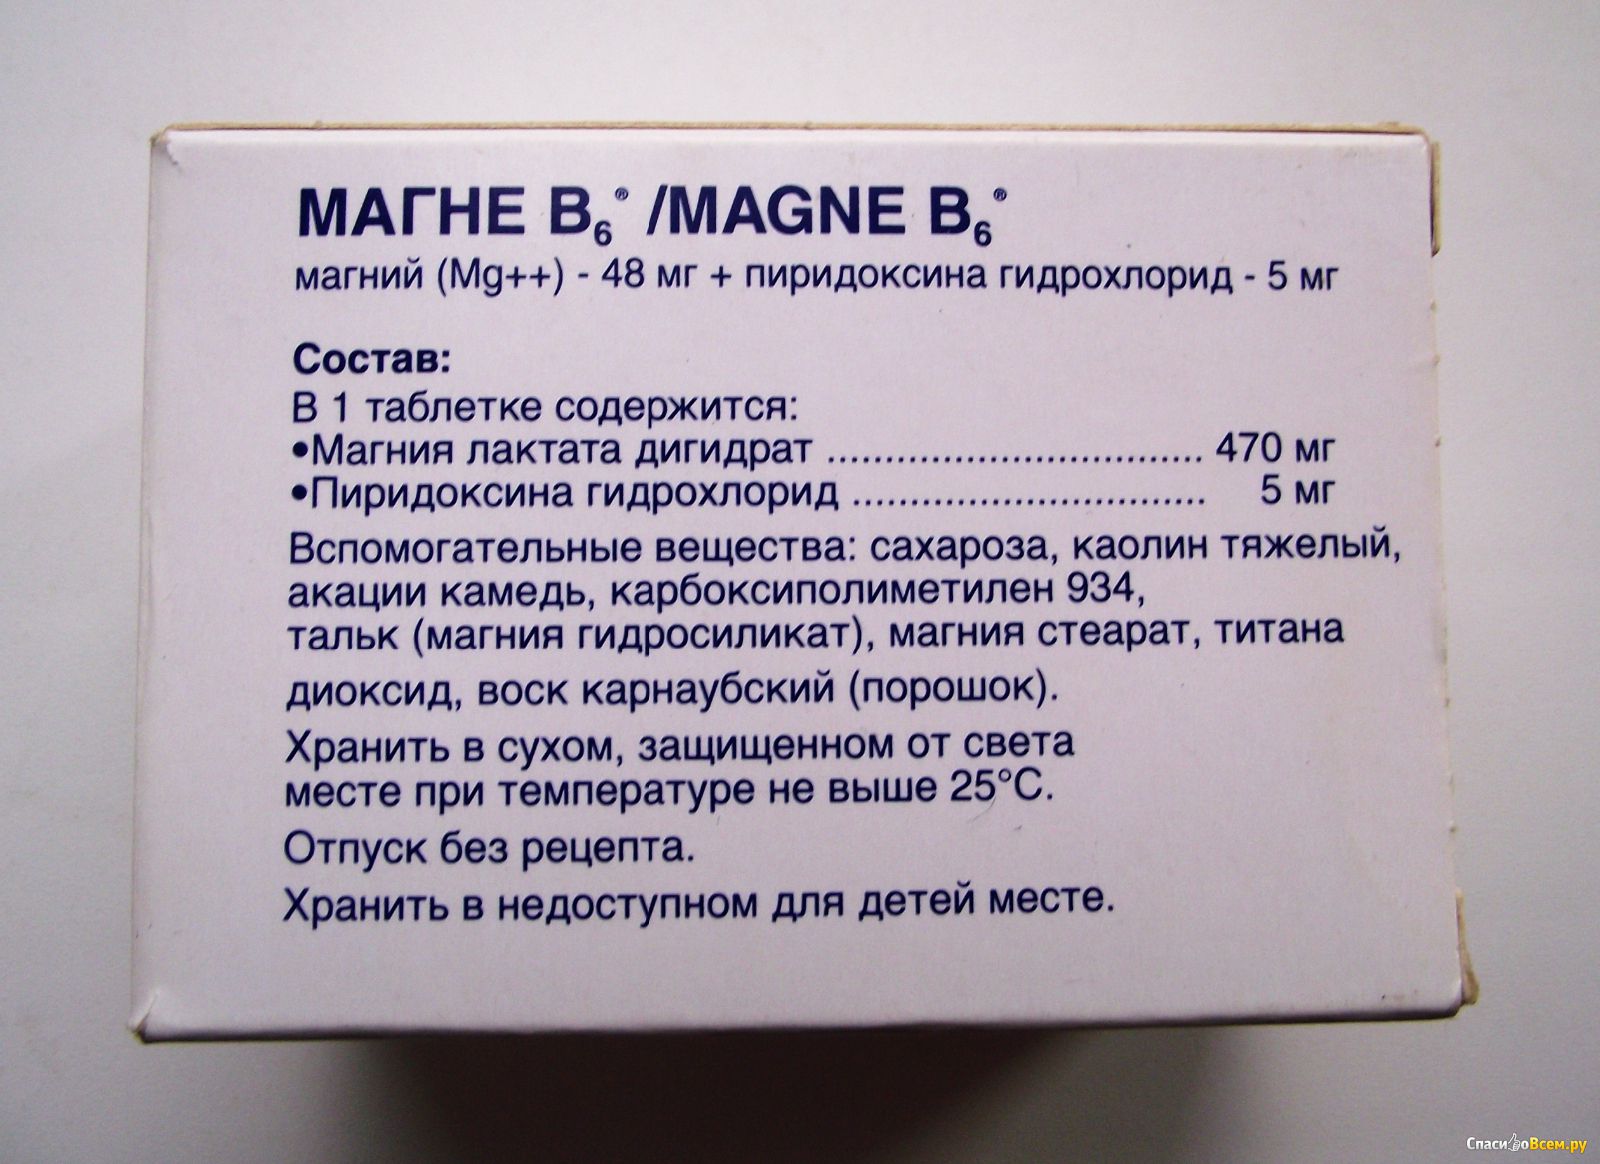 Б6 в сутки. Магний в6 состав. Суточная дозировка магния в6. Магний б6 пиридоксина гидрохлорид.